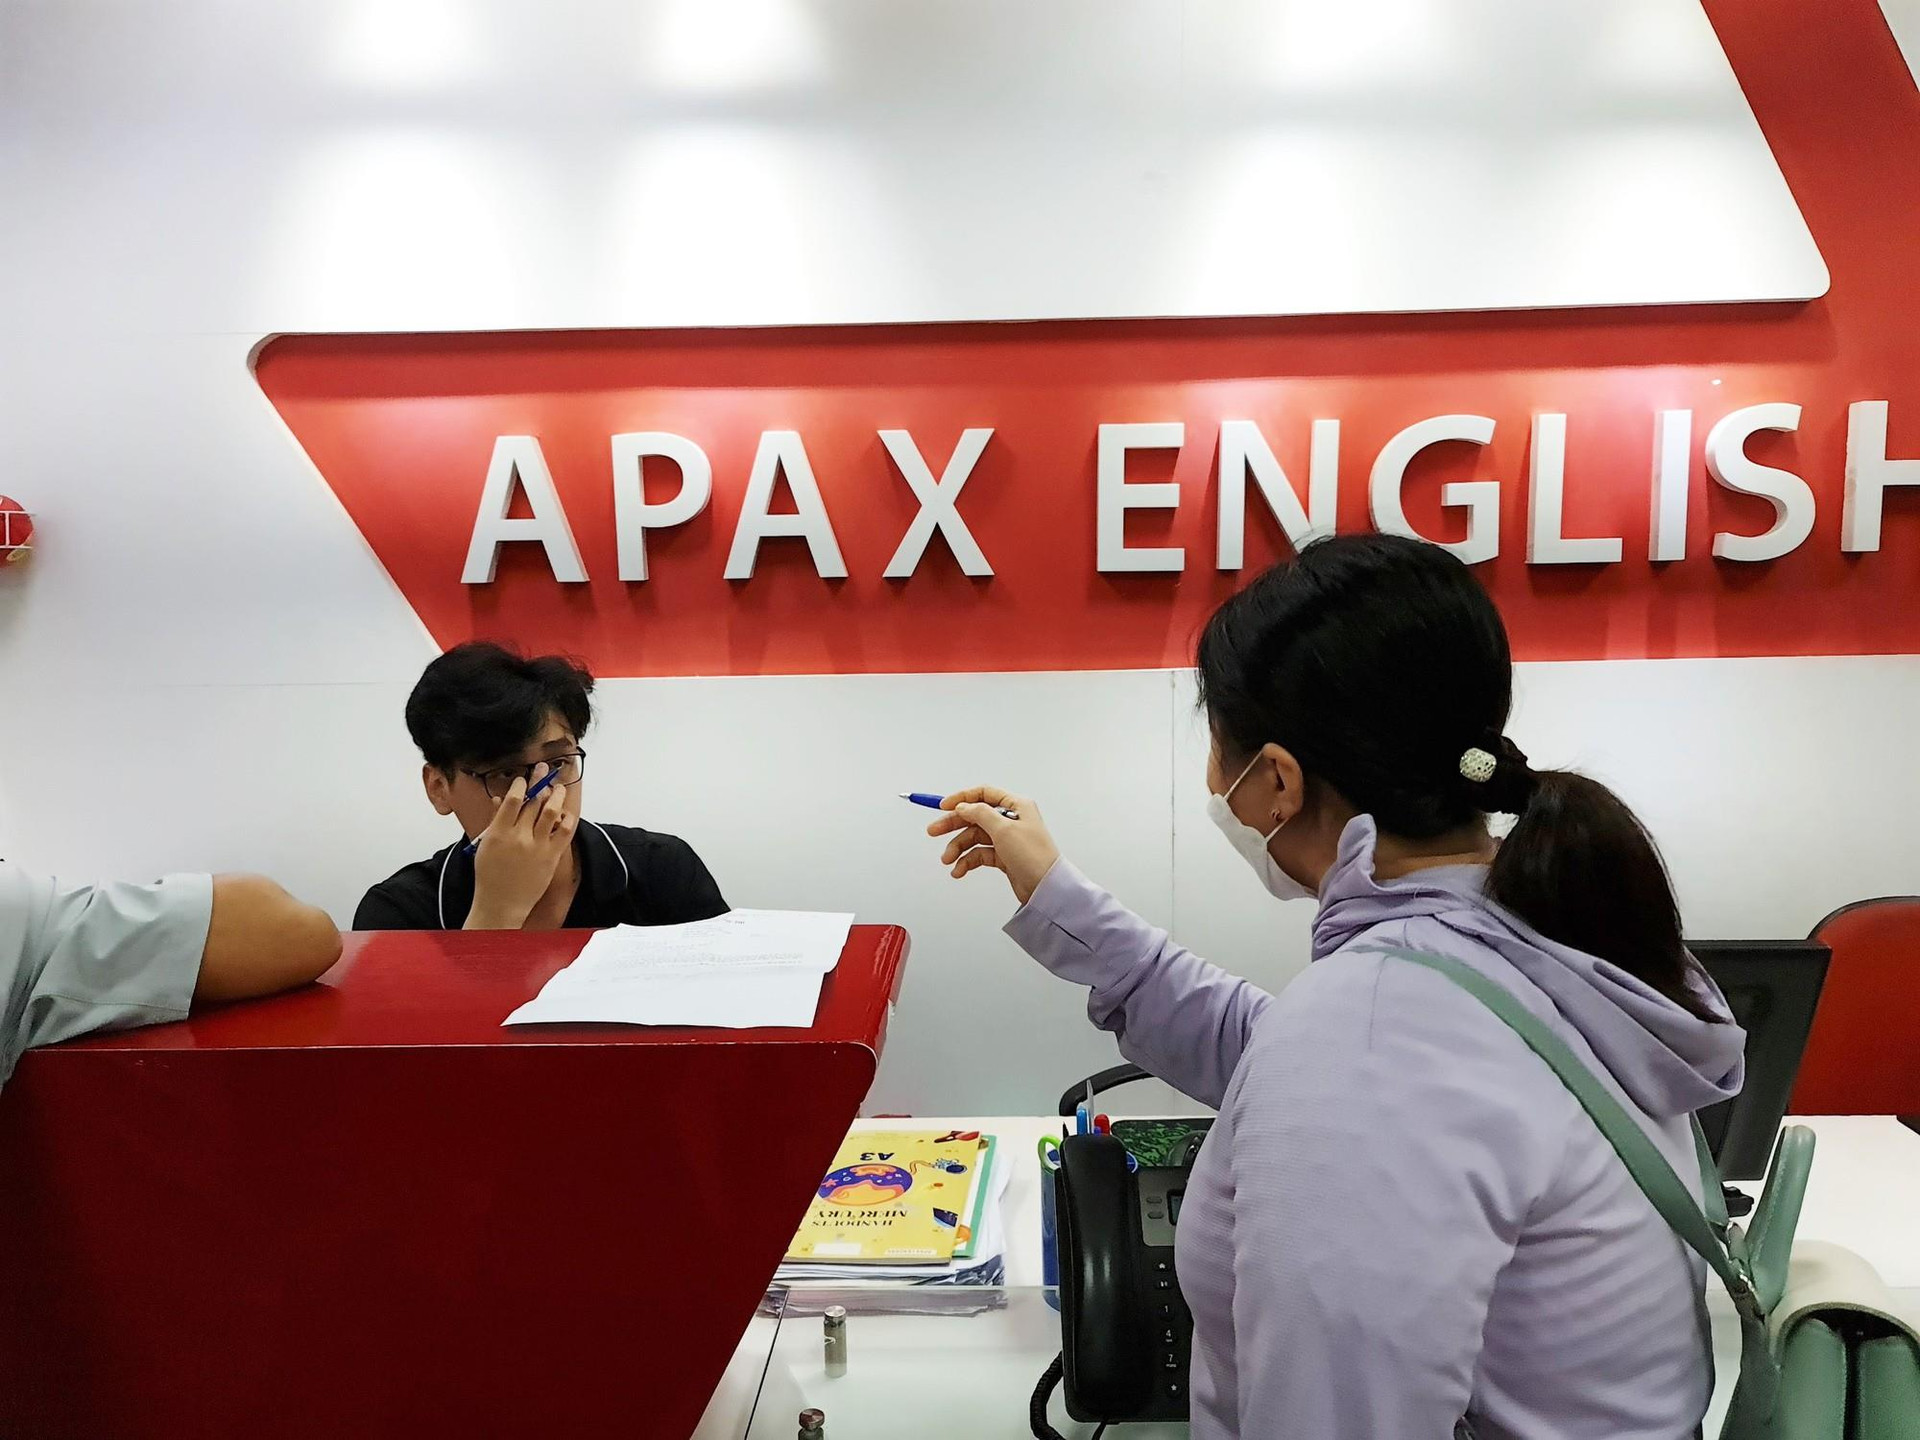 Apax Holdings (IBC) lên tiếng về thông tin liên quan đến Trung tâm Anh ngữ Apax